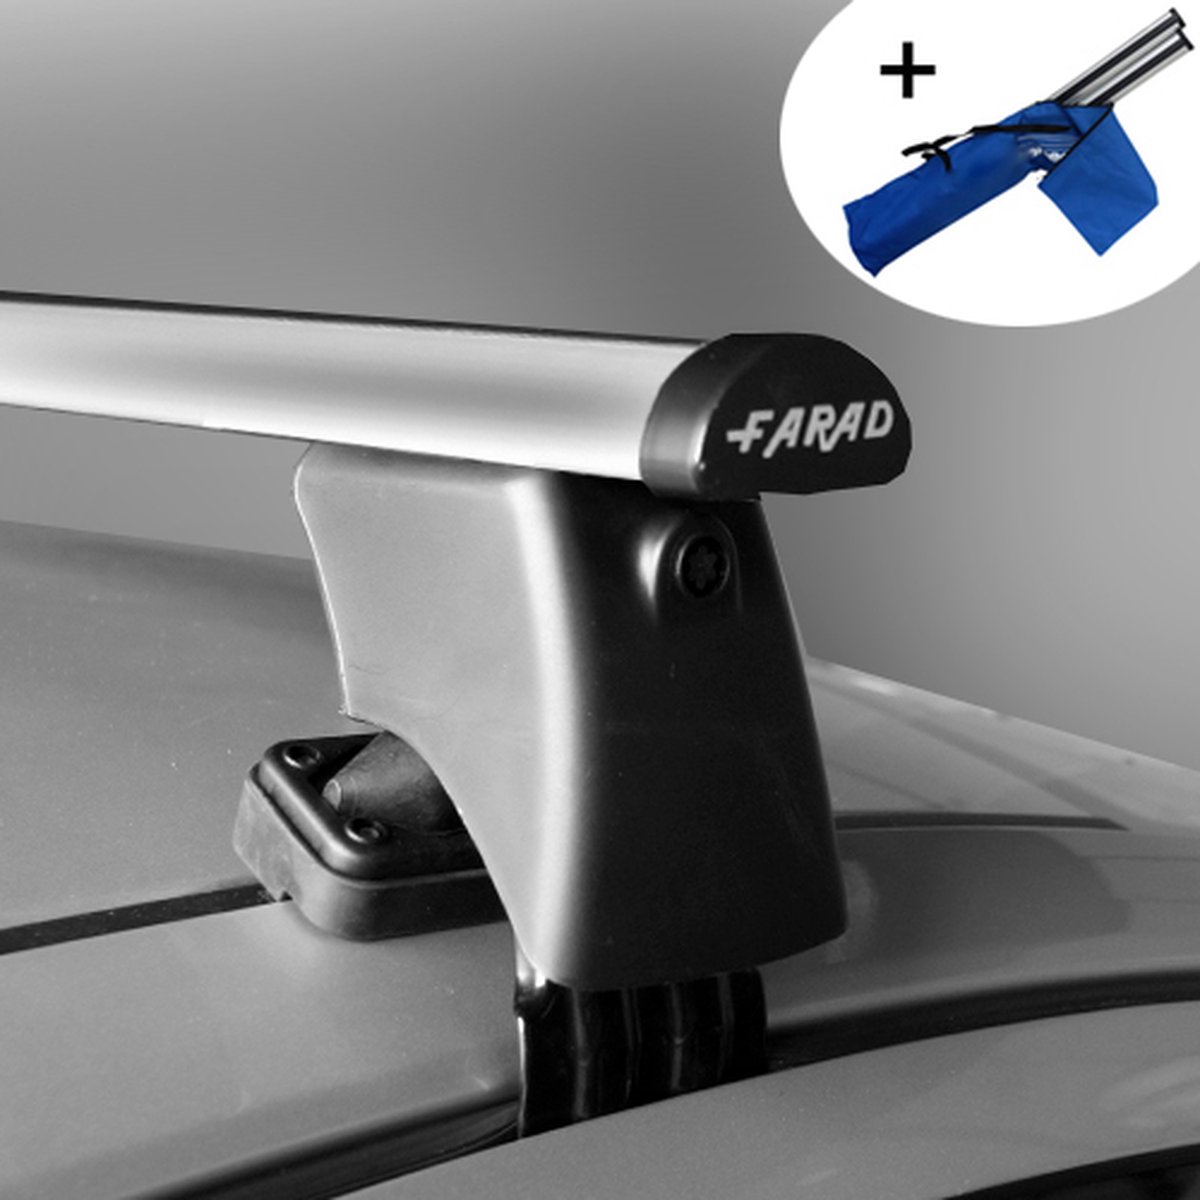 Dakdragers geschikt voor Skoda Citigo 3 deurs hatchback vanaf 2012 - Aluminium - inclusief dakdrager opbergtas